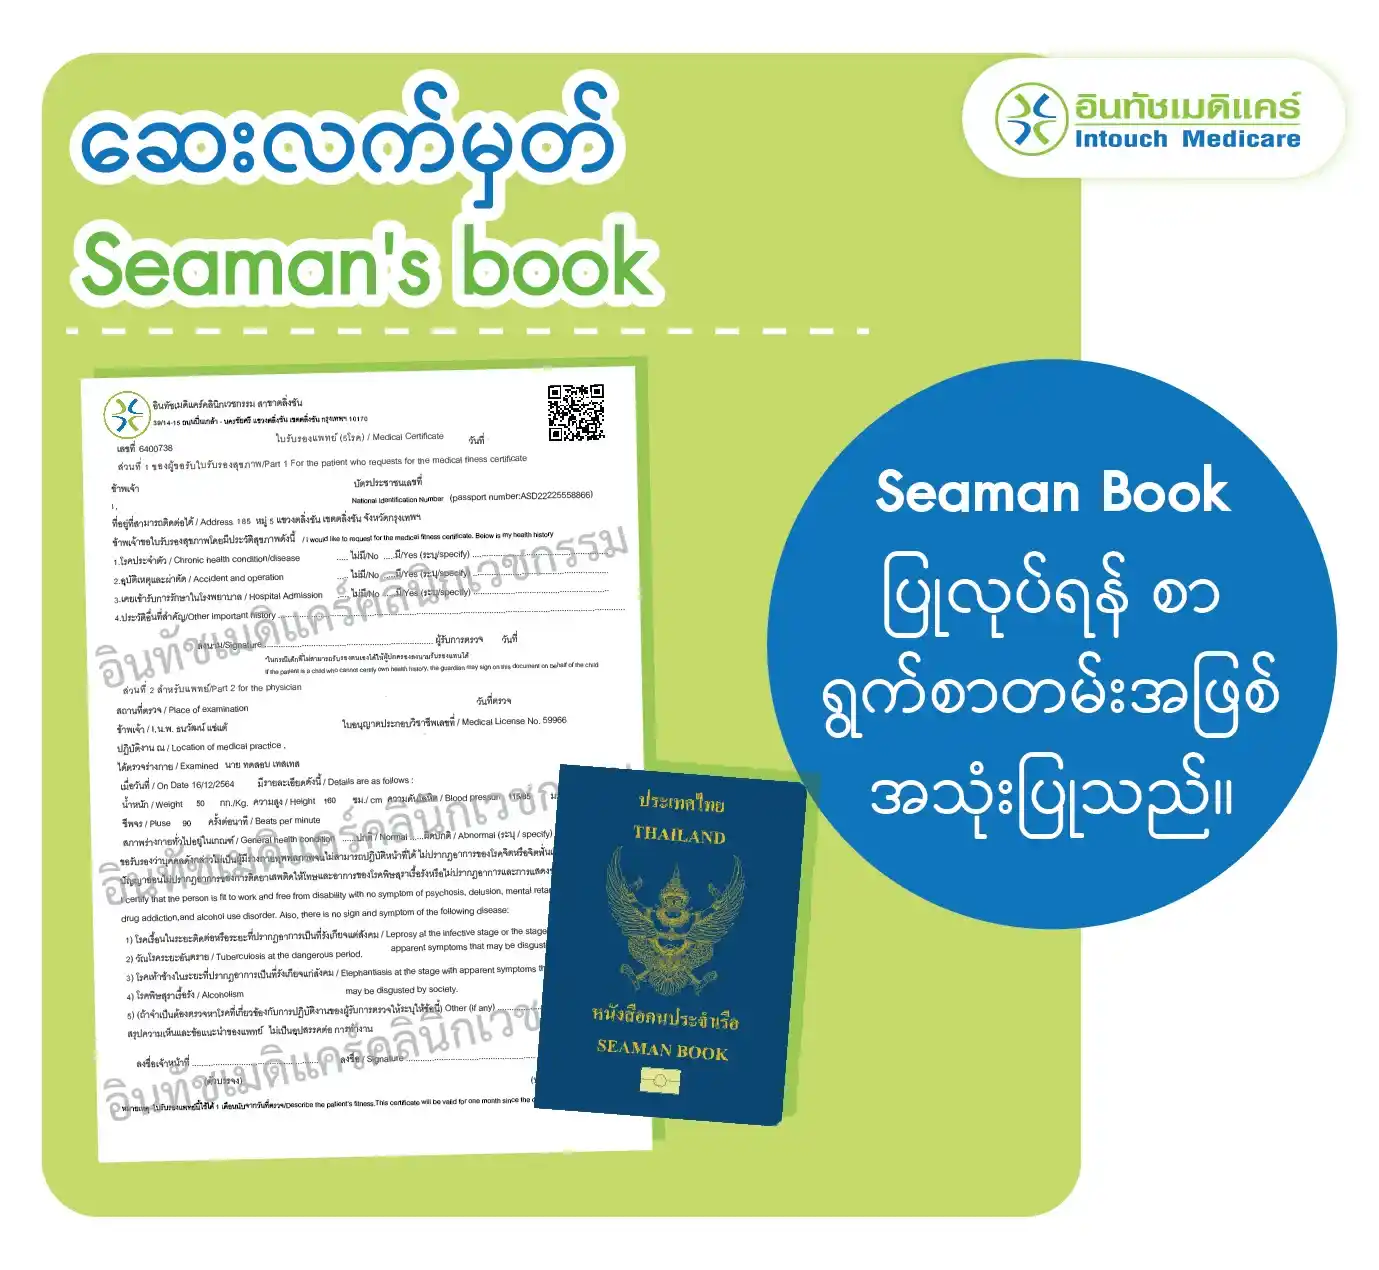 ဆေးလက်မှတ် / Seaman's book / Seaman Book ပြုလုပ်ရန် စာ ရွက်စာတမ်းအဖြစ် အသုံးပြုသည်။